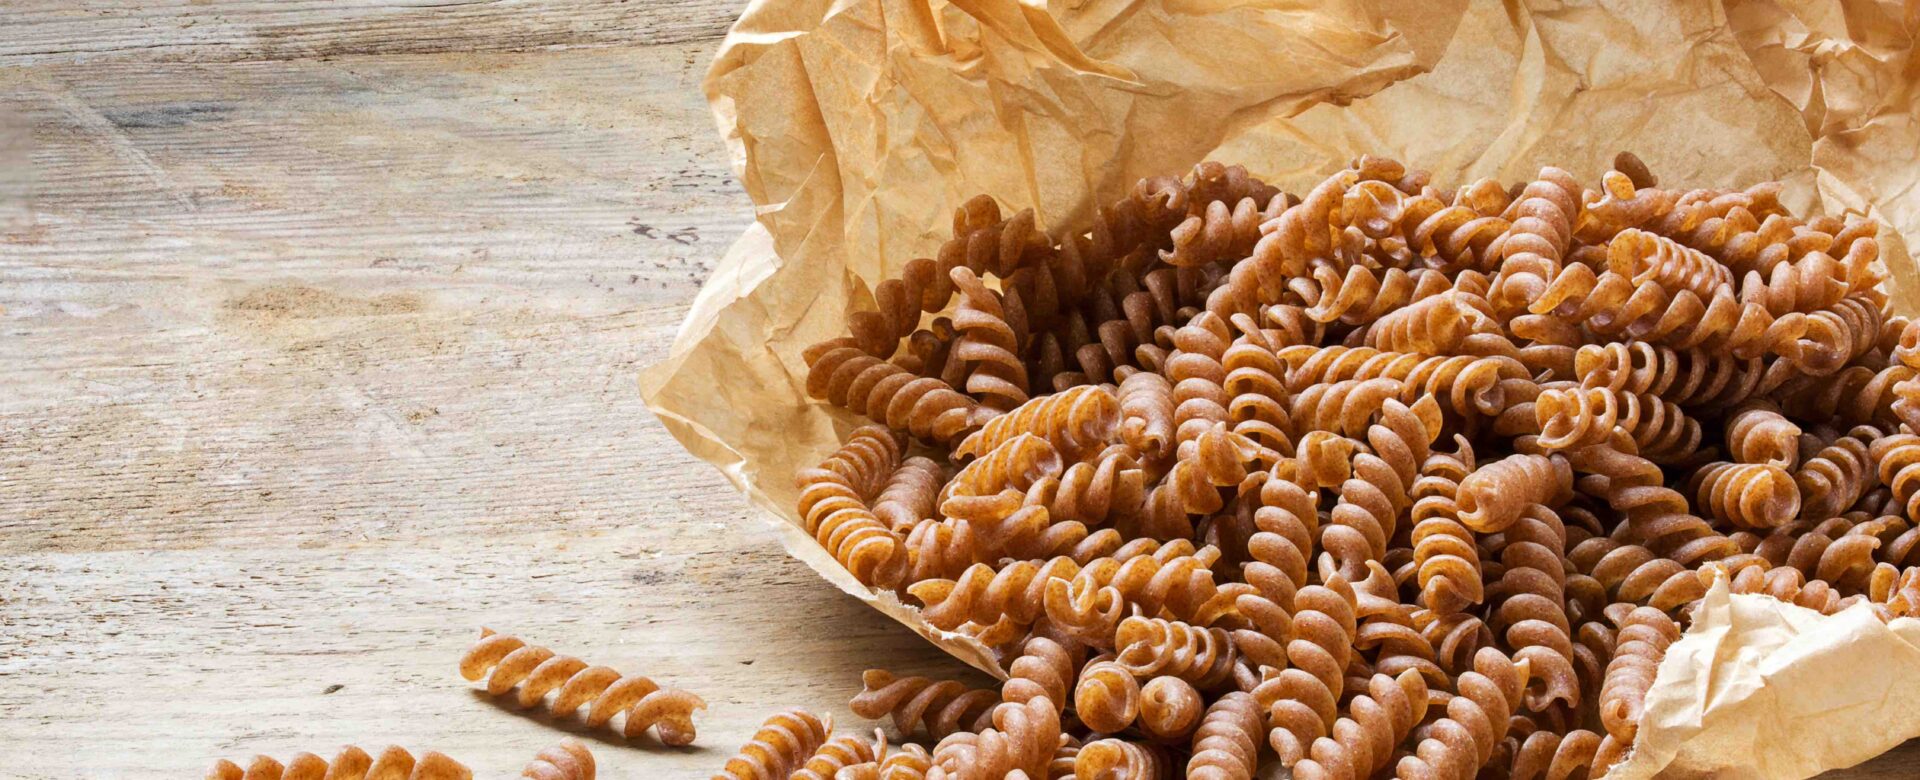 Hoeveel vezels zitten er in volkoren pasta